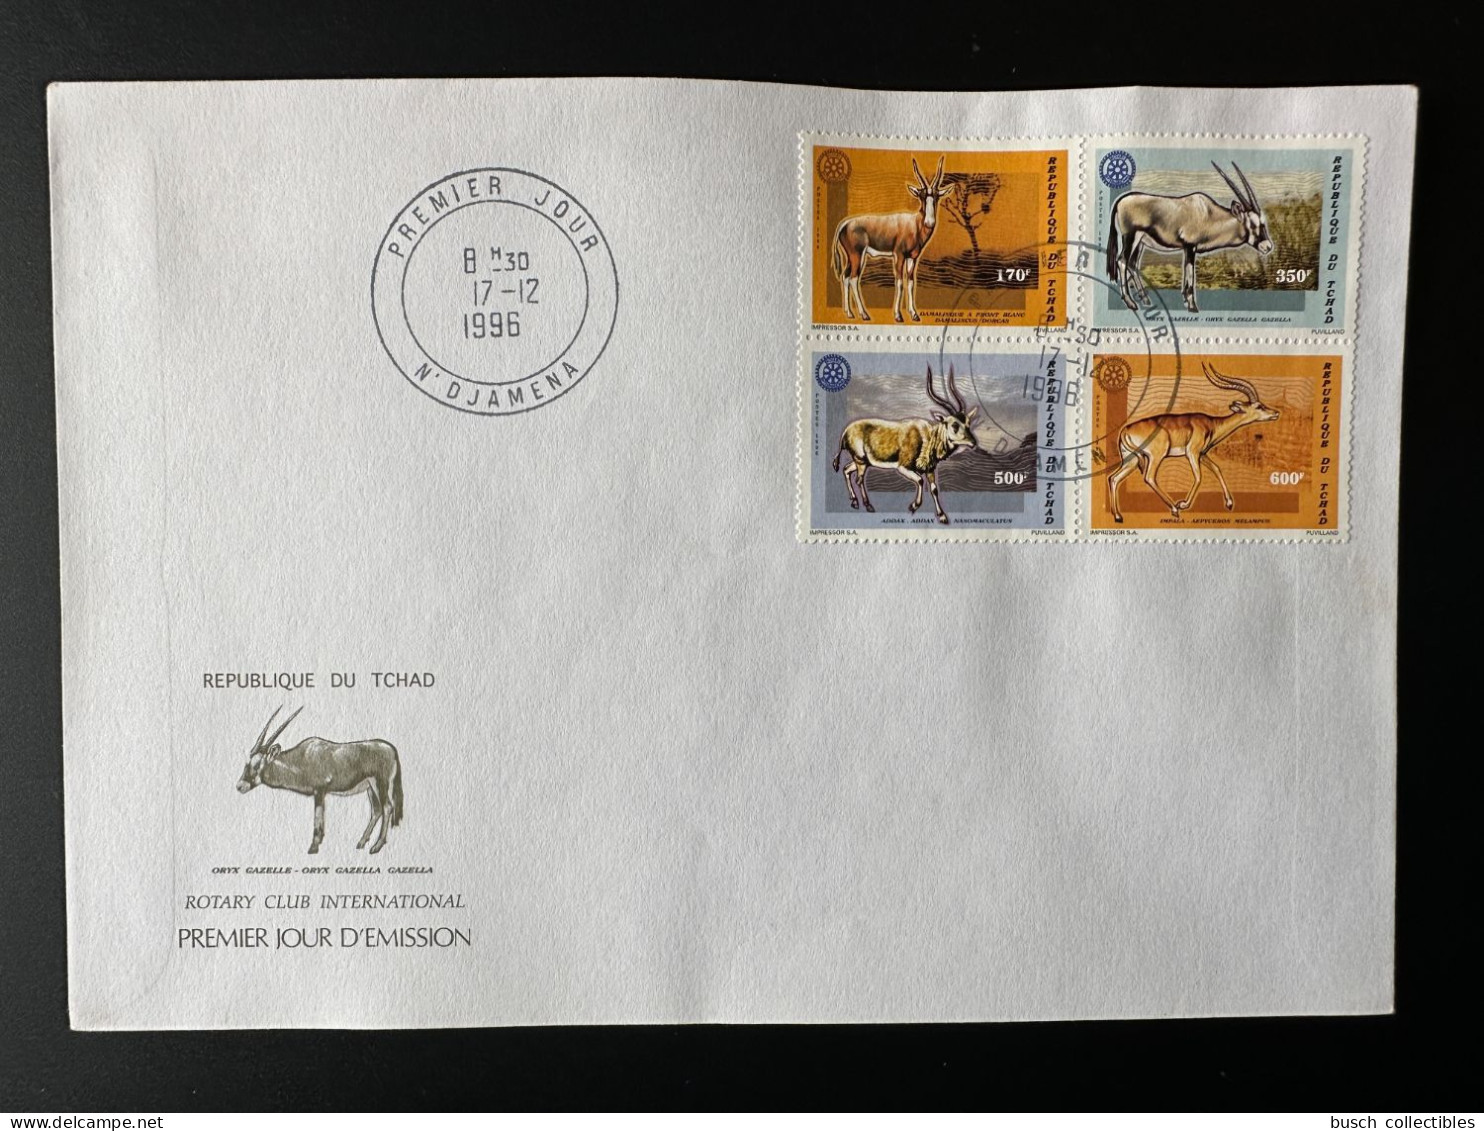 Tchad Chad Tschad 1996 Mi. 1448 - 1451 FDC 1er Jour Rotary International Faune Fauna Impalla Oryx Gazelle Addax - Chad (1960-...)